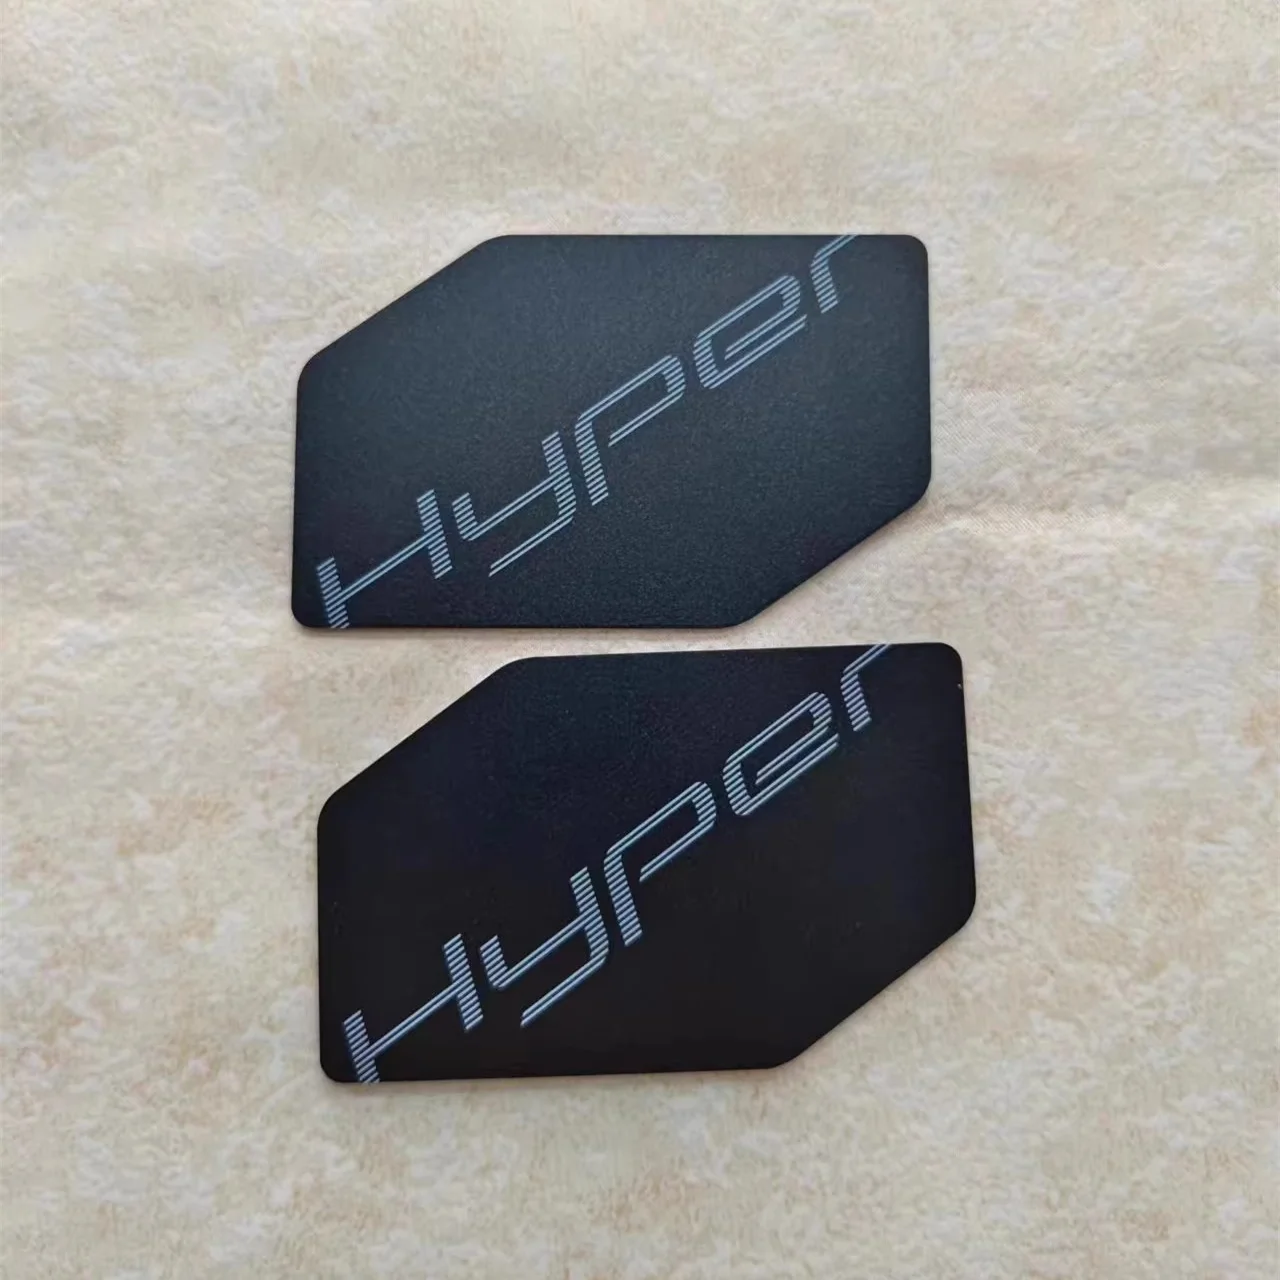 Dla GAC Aion Hyper GT HT inteligentny klucz samochodowy NFC karta klucz dla GAC AION Hyper GT HT SSR bezkluczykowy samochód zdalny kluczyk Nfc karta klucz